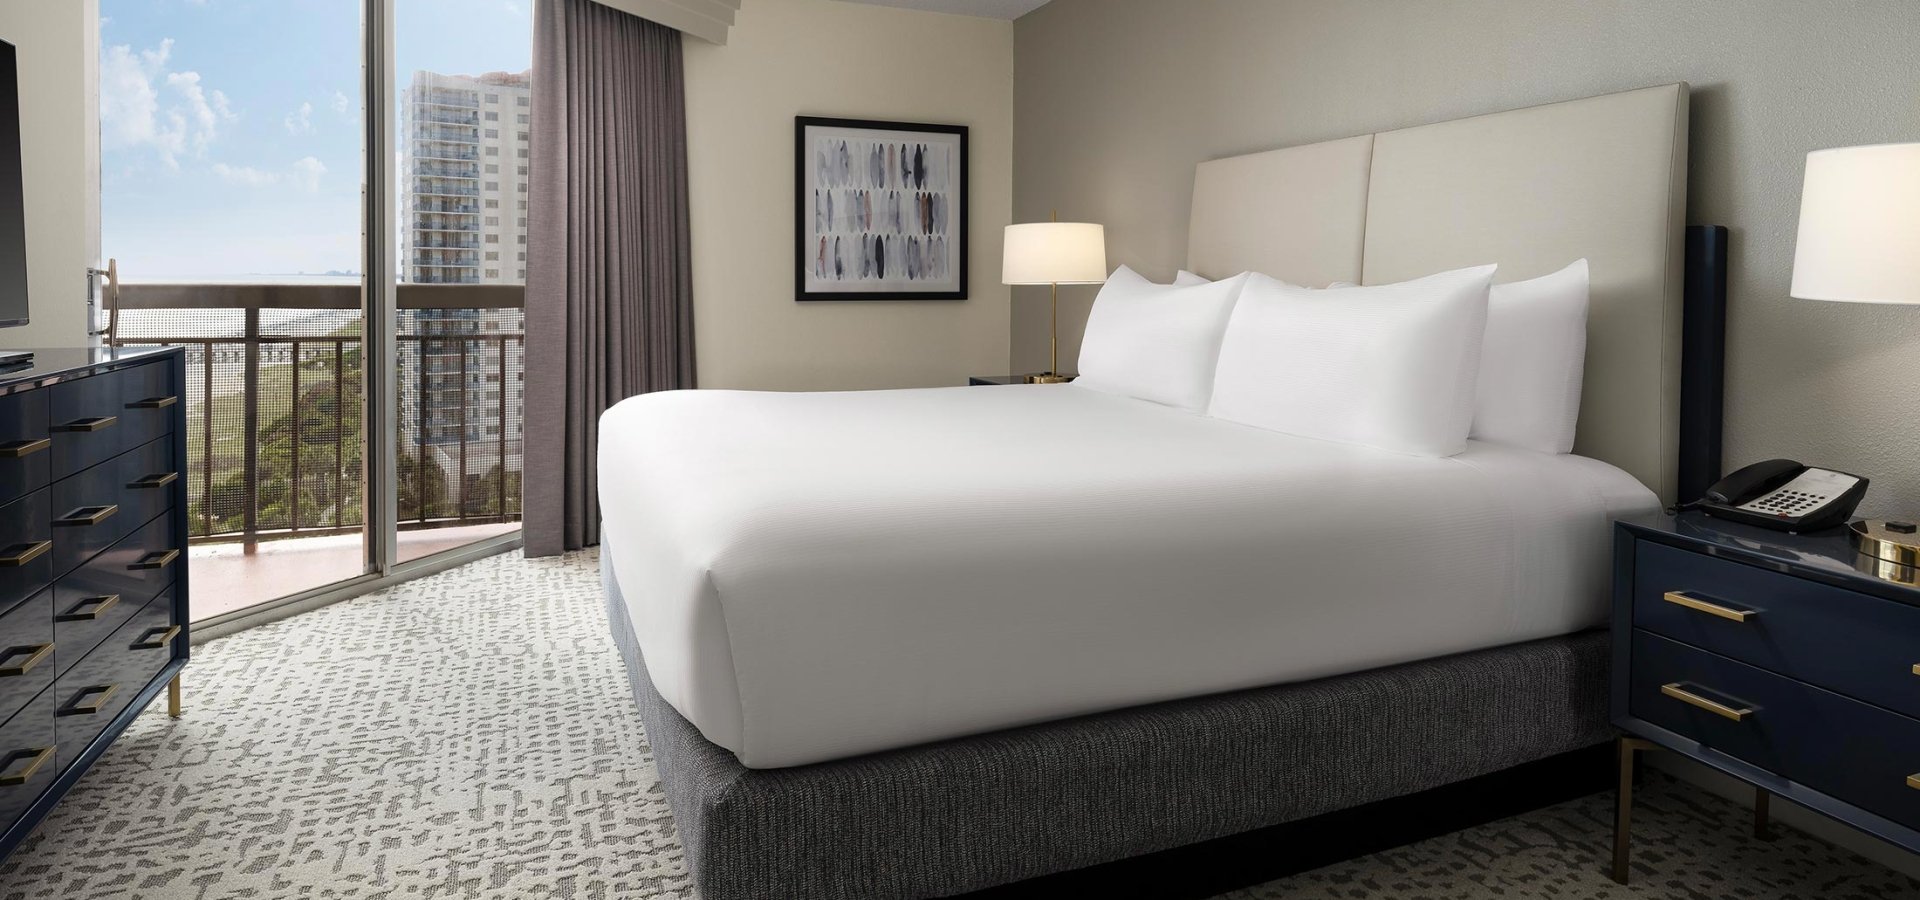 Hotel bed in Embassy Suites bedroom